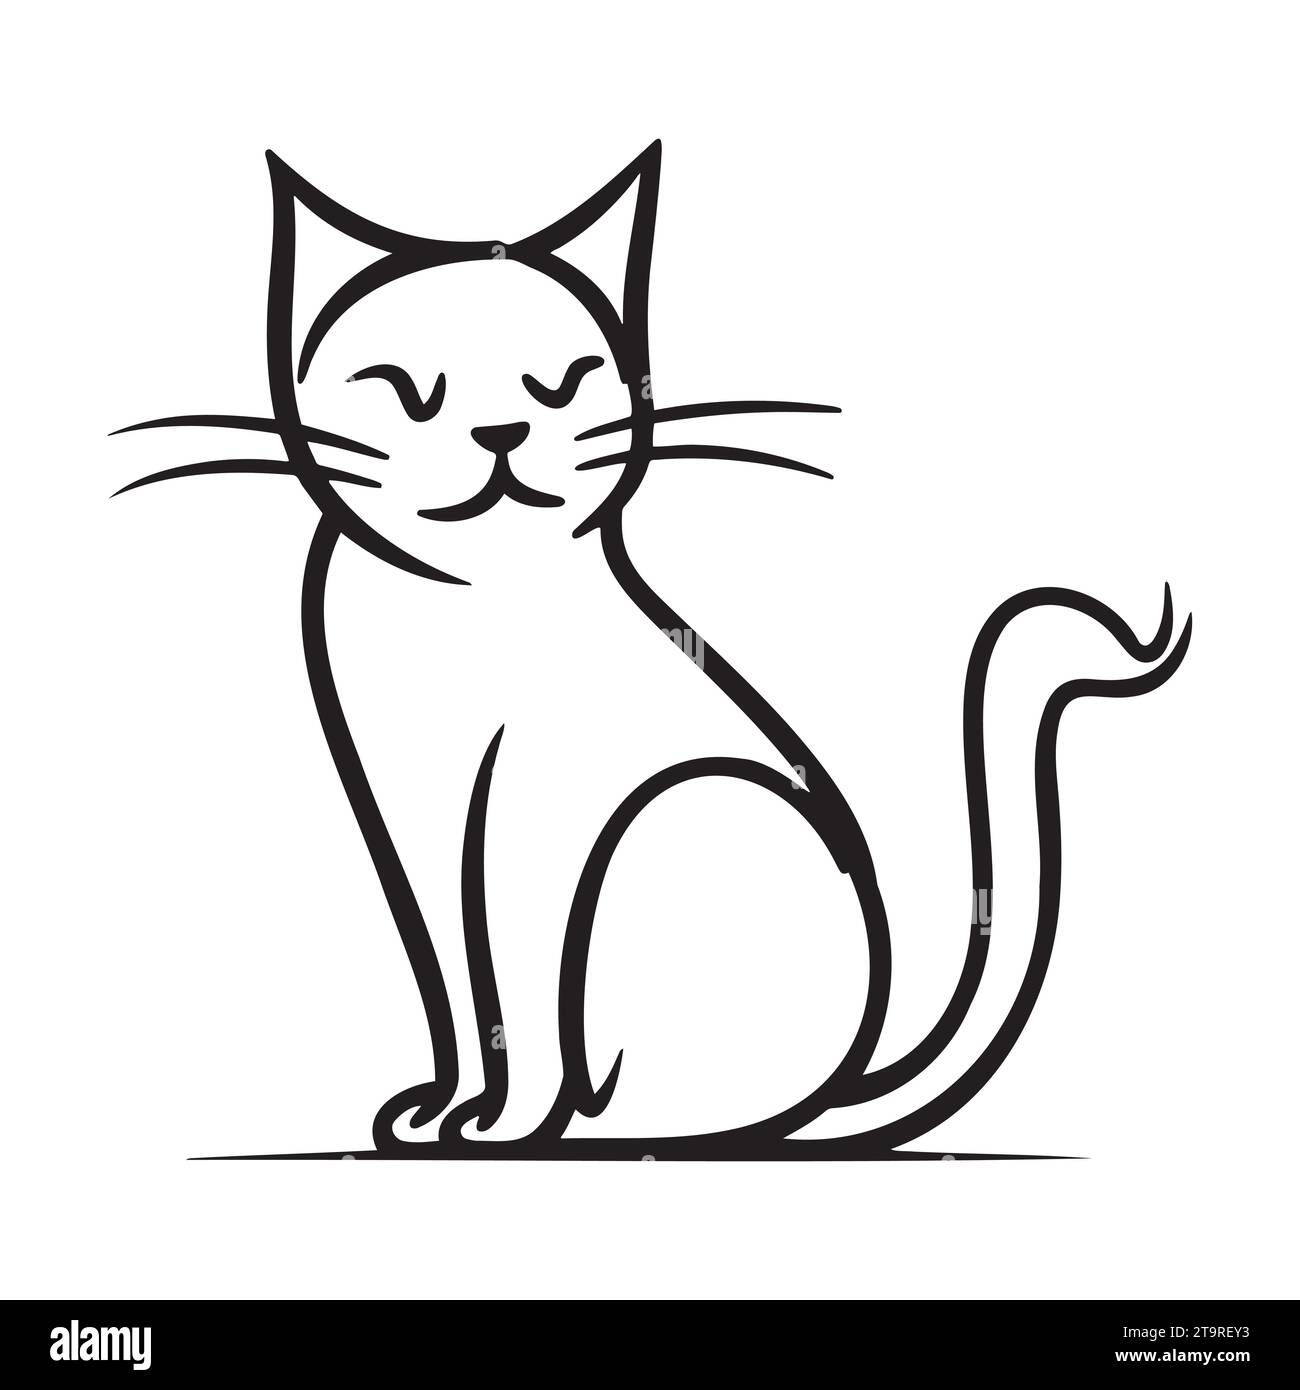 Vektor Hand gezeichnet süße Katze. Isolierte Abbildung auf weißem Hintergrund Stock Vektor